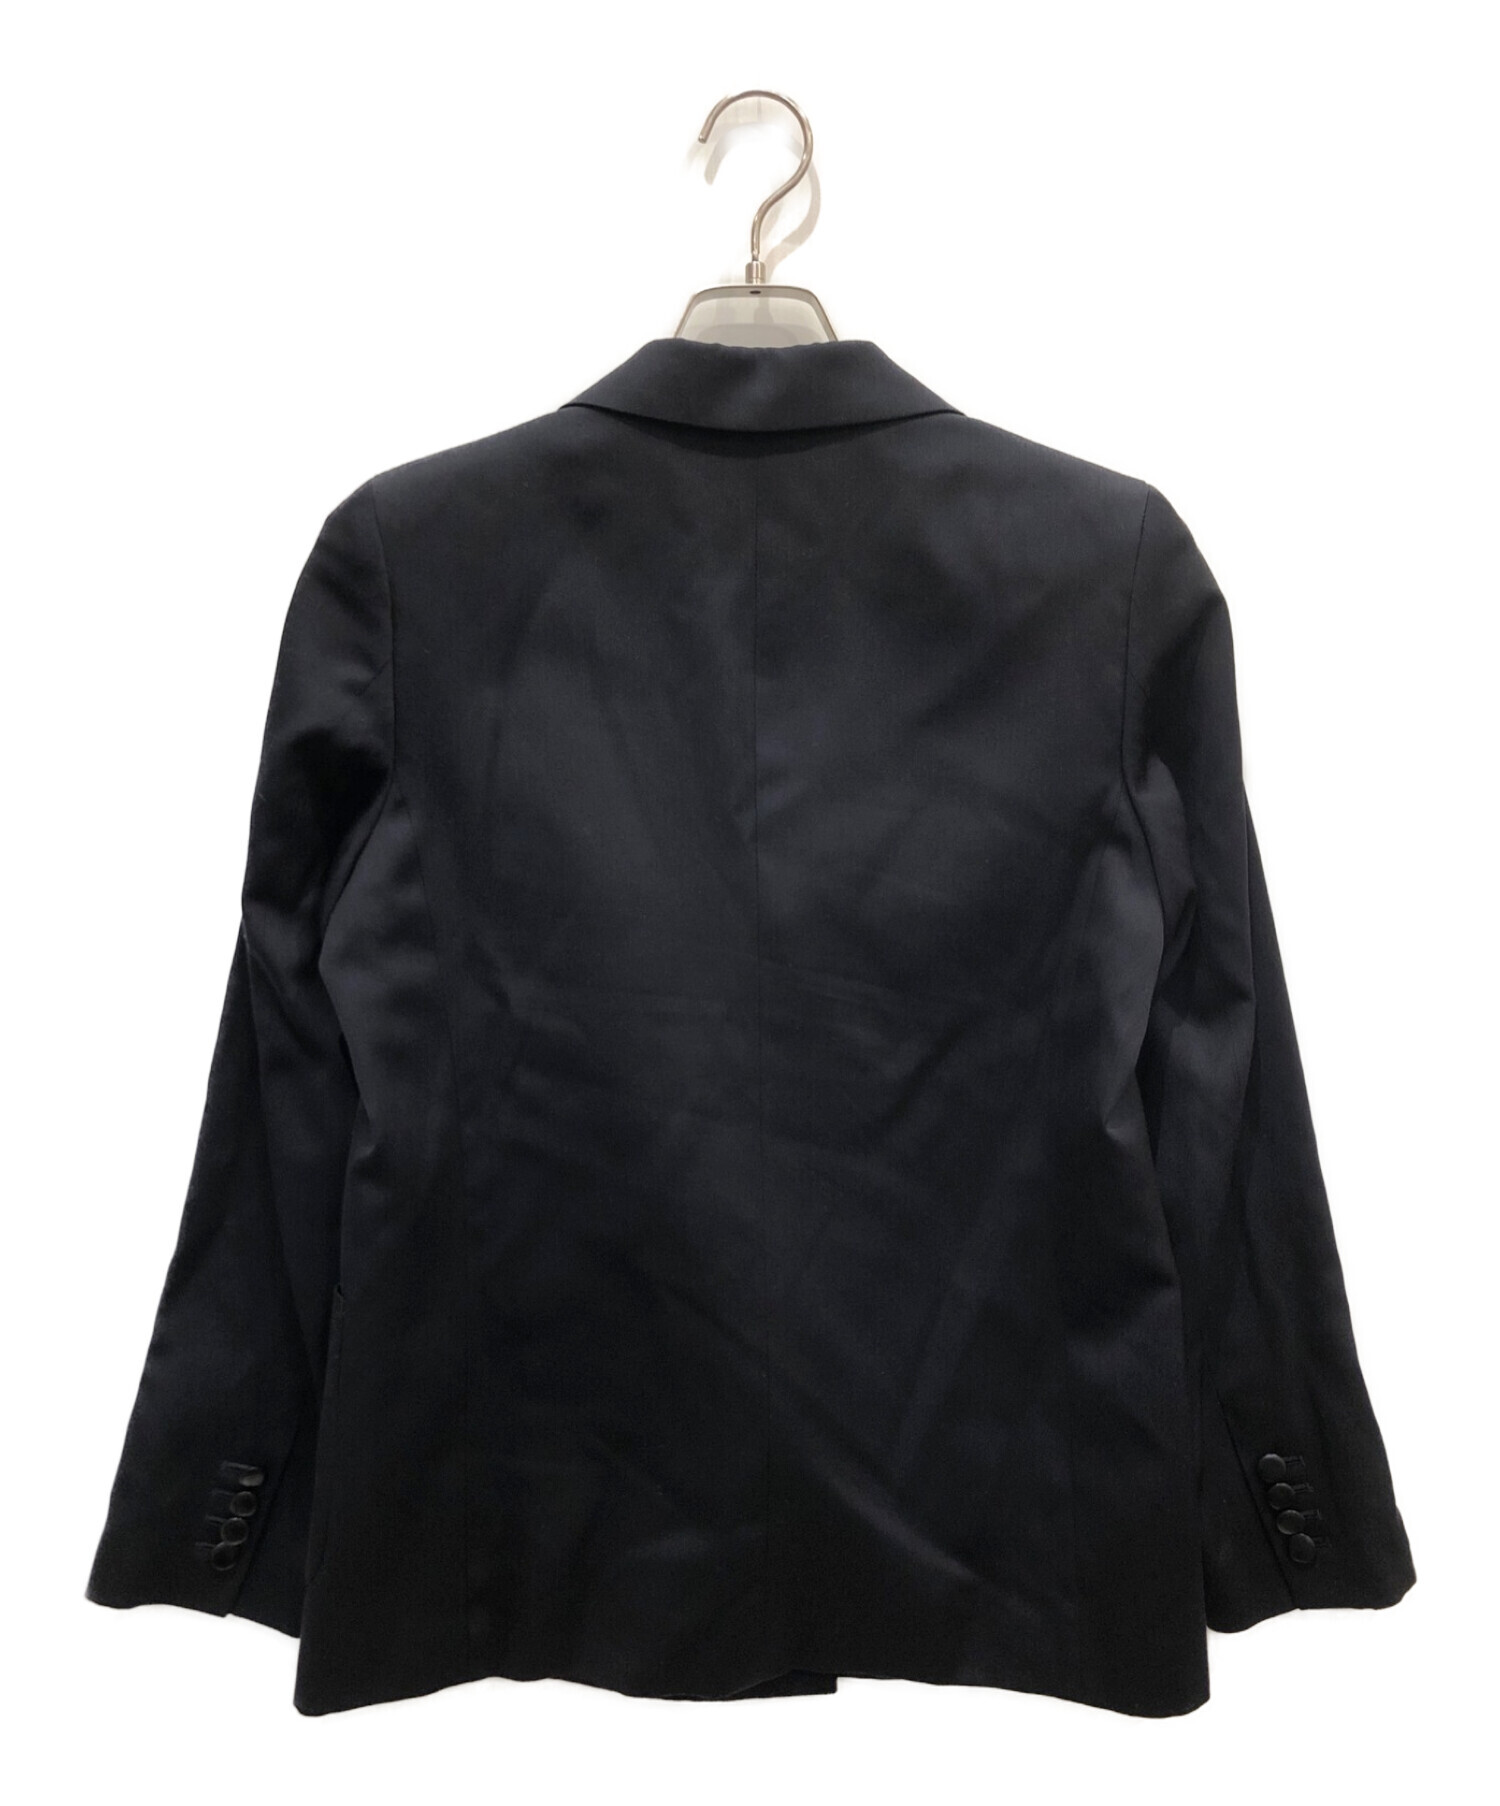 UNITED ARROWS (ユナイテッドアローズ) ダブルテーラードジャケット ブラック サイズ:40